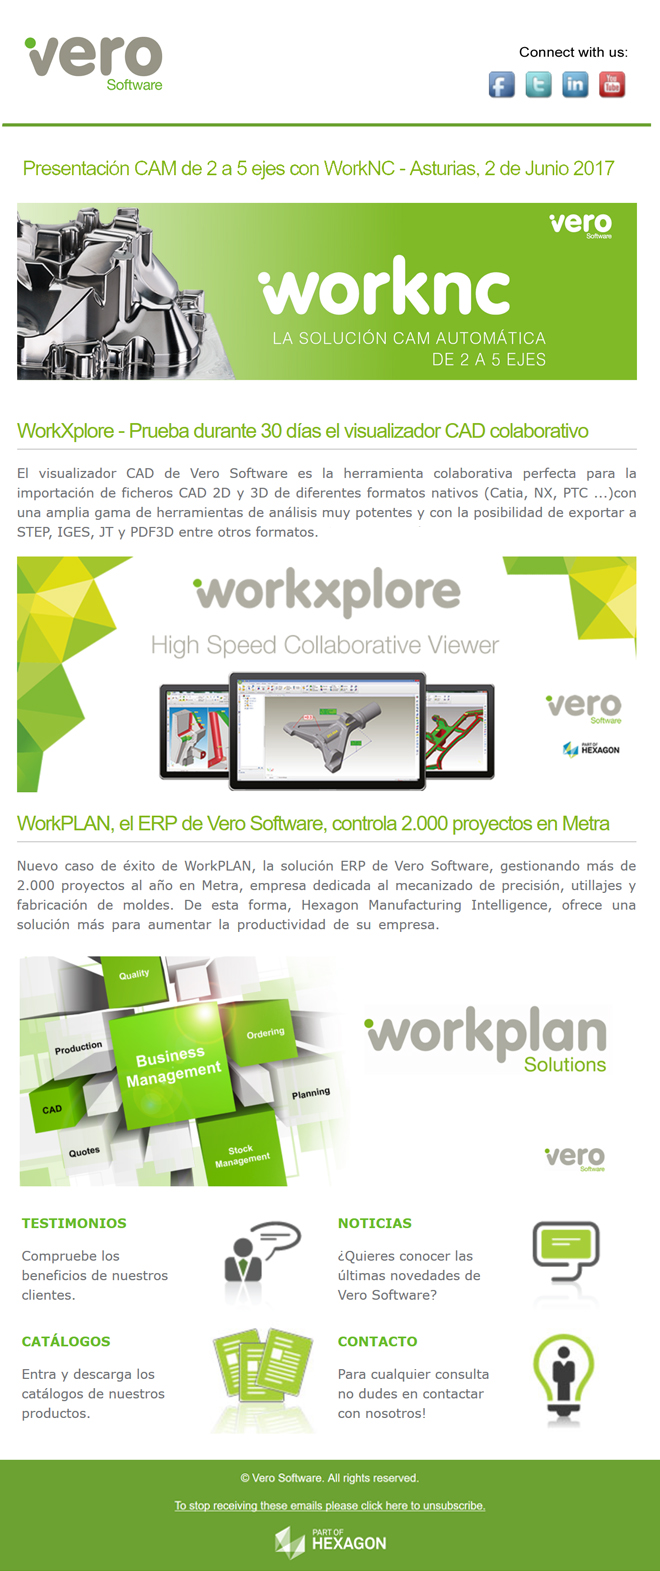 VERO SOFTWARE: Jornada CAM en Oviedo - Prueba WorkXplore - Caso de éxito ERP WorkPLAN